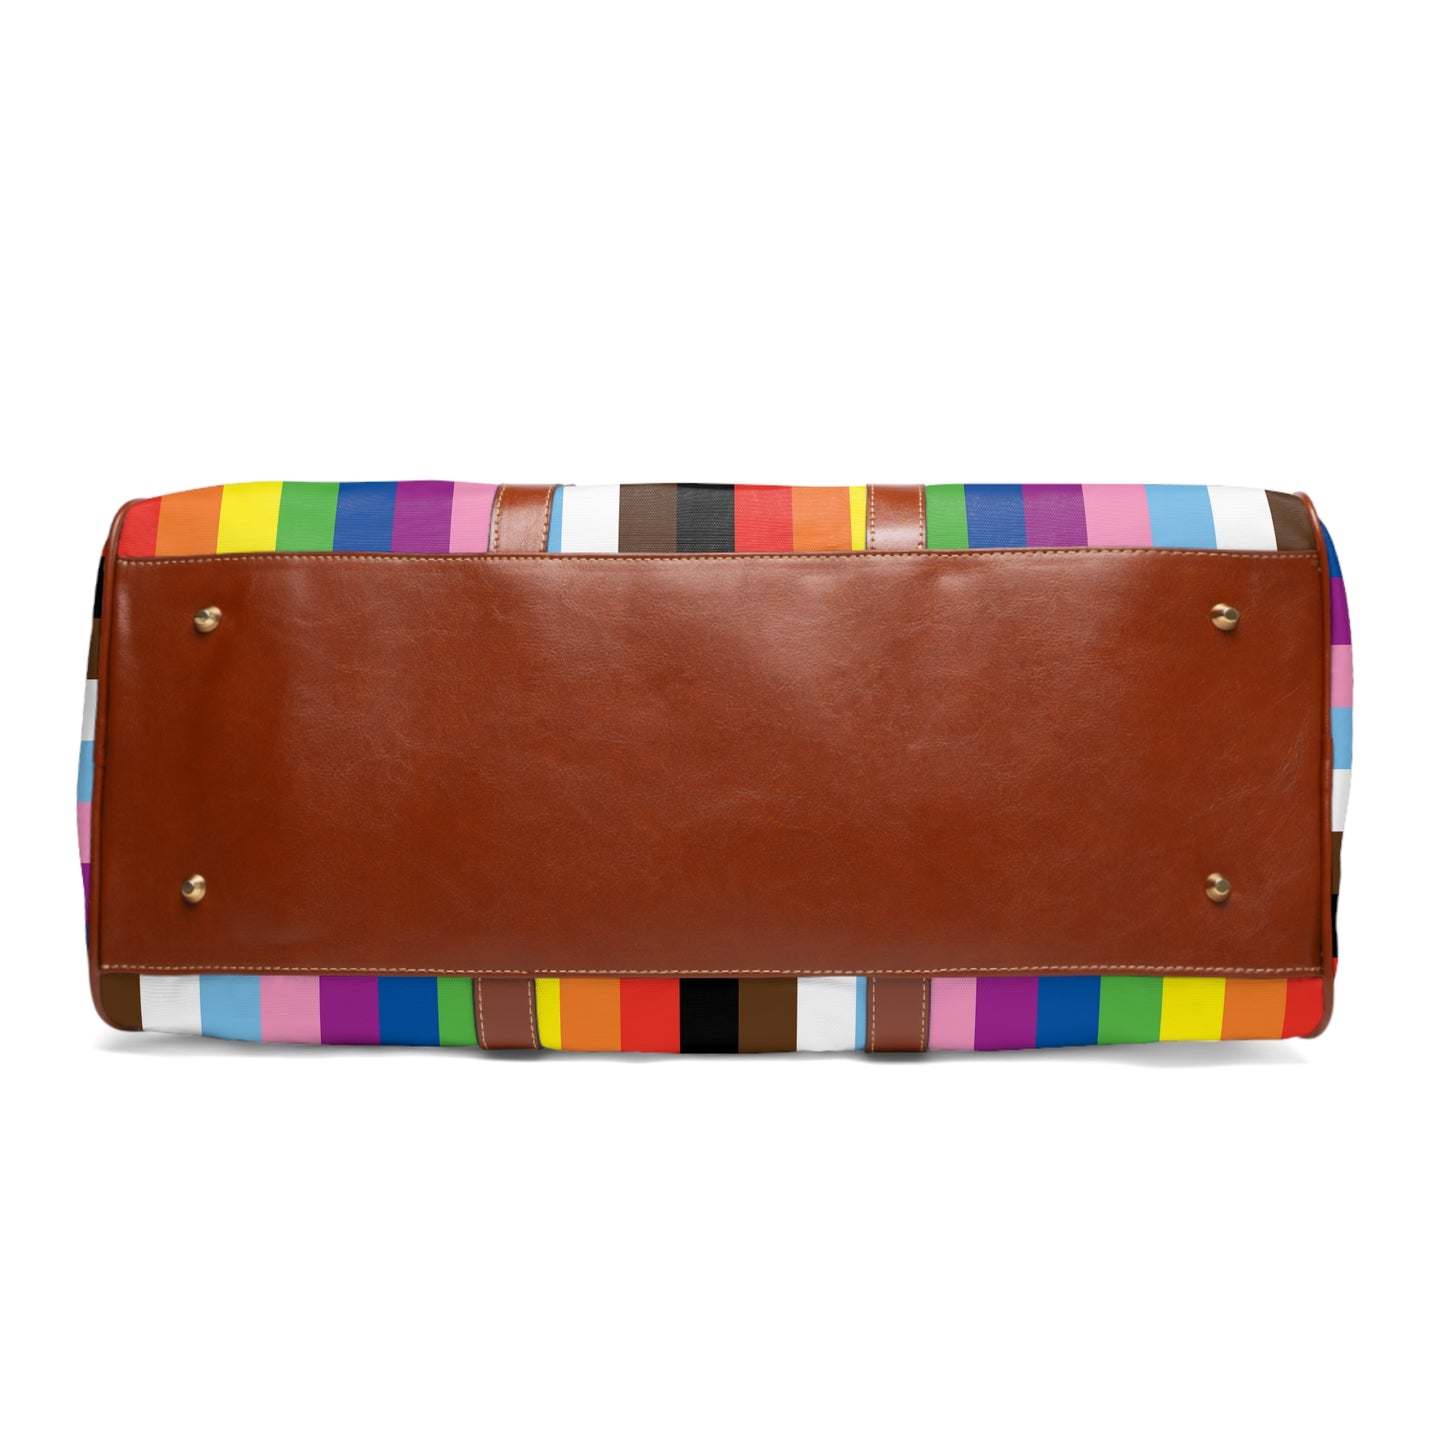 Pride stripes - Waterproof Travel Bag